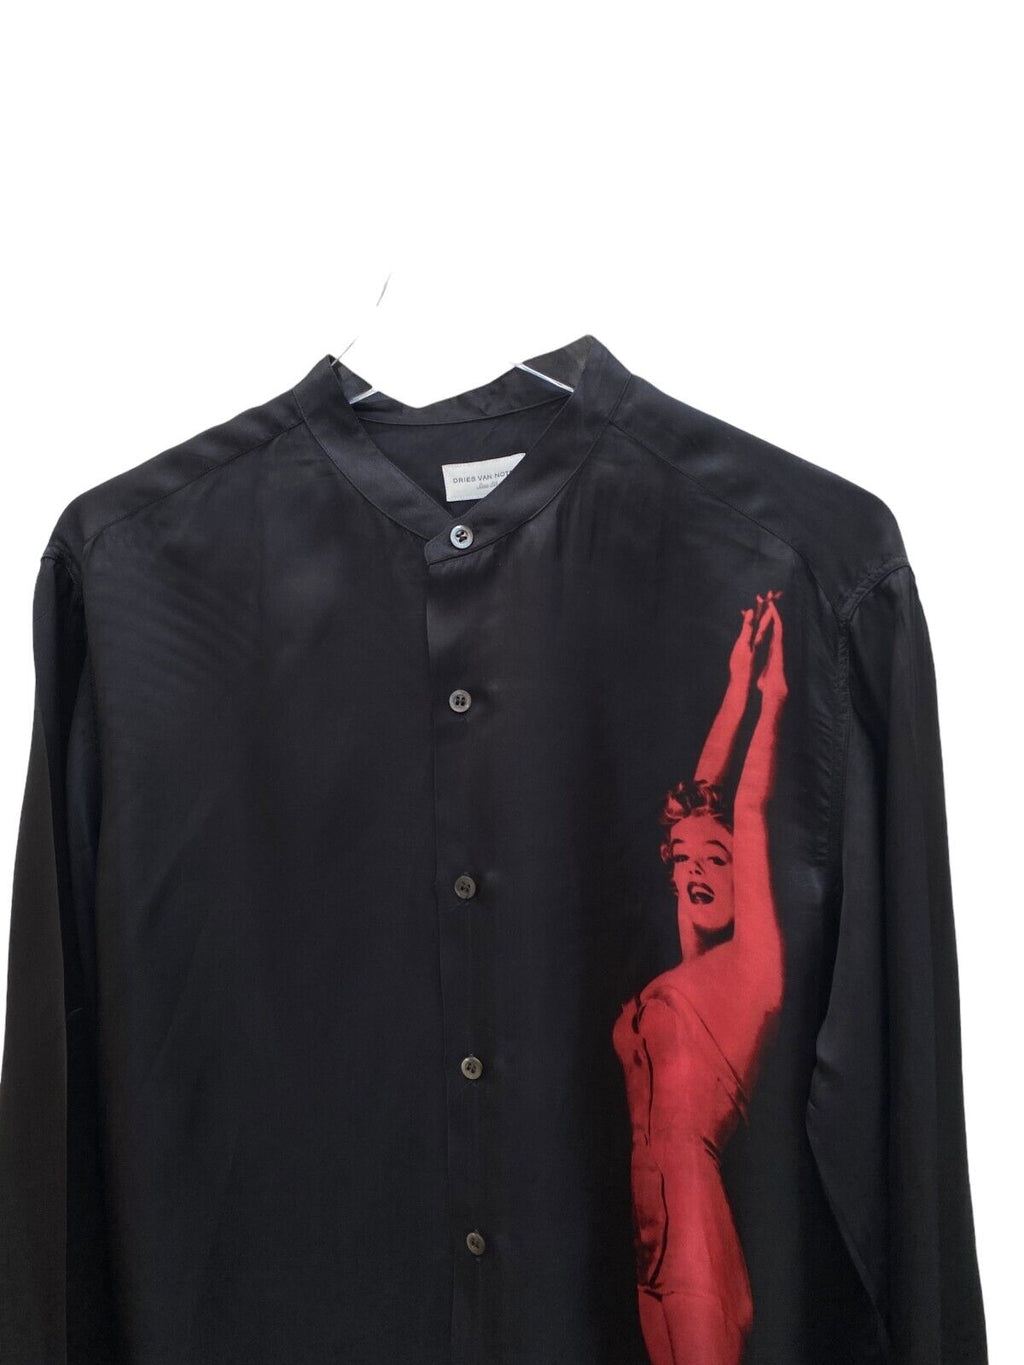 RARE SS 2016 Marilyn Monroe Long Black Shirt Size 50 Large L